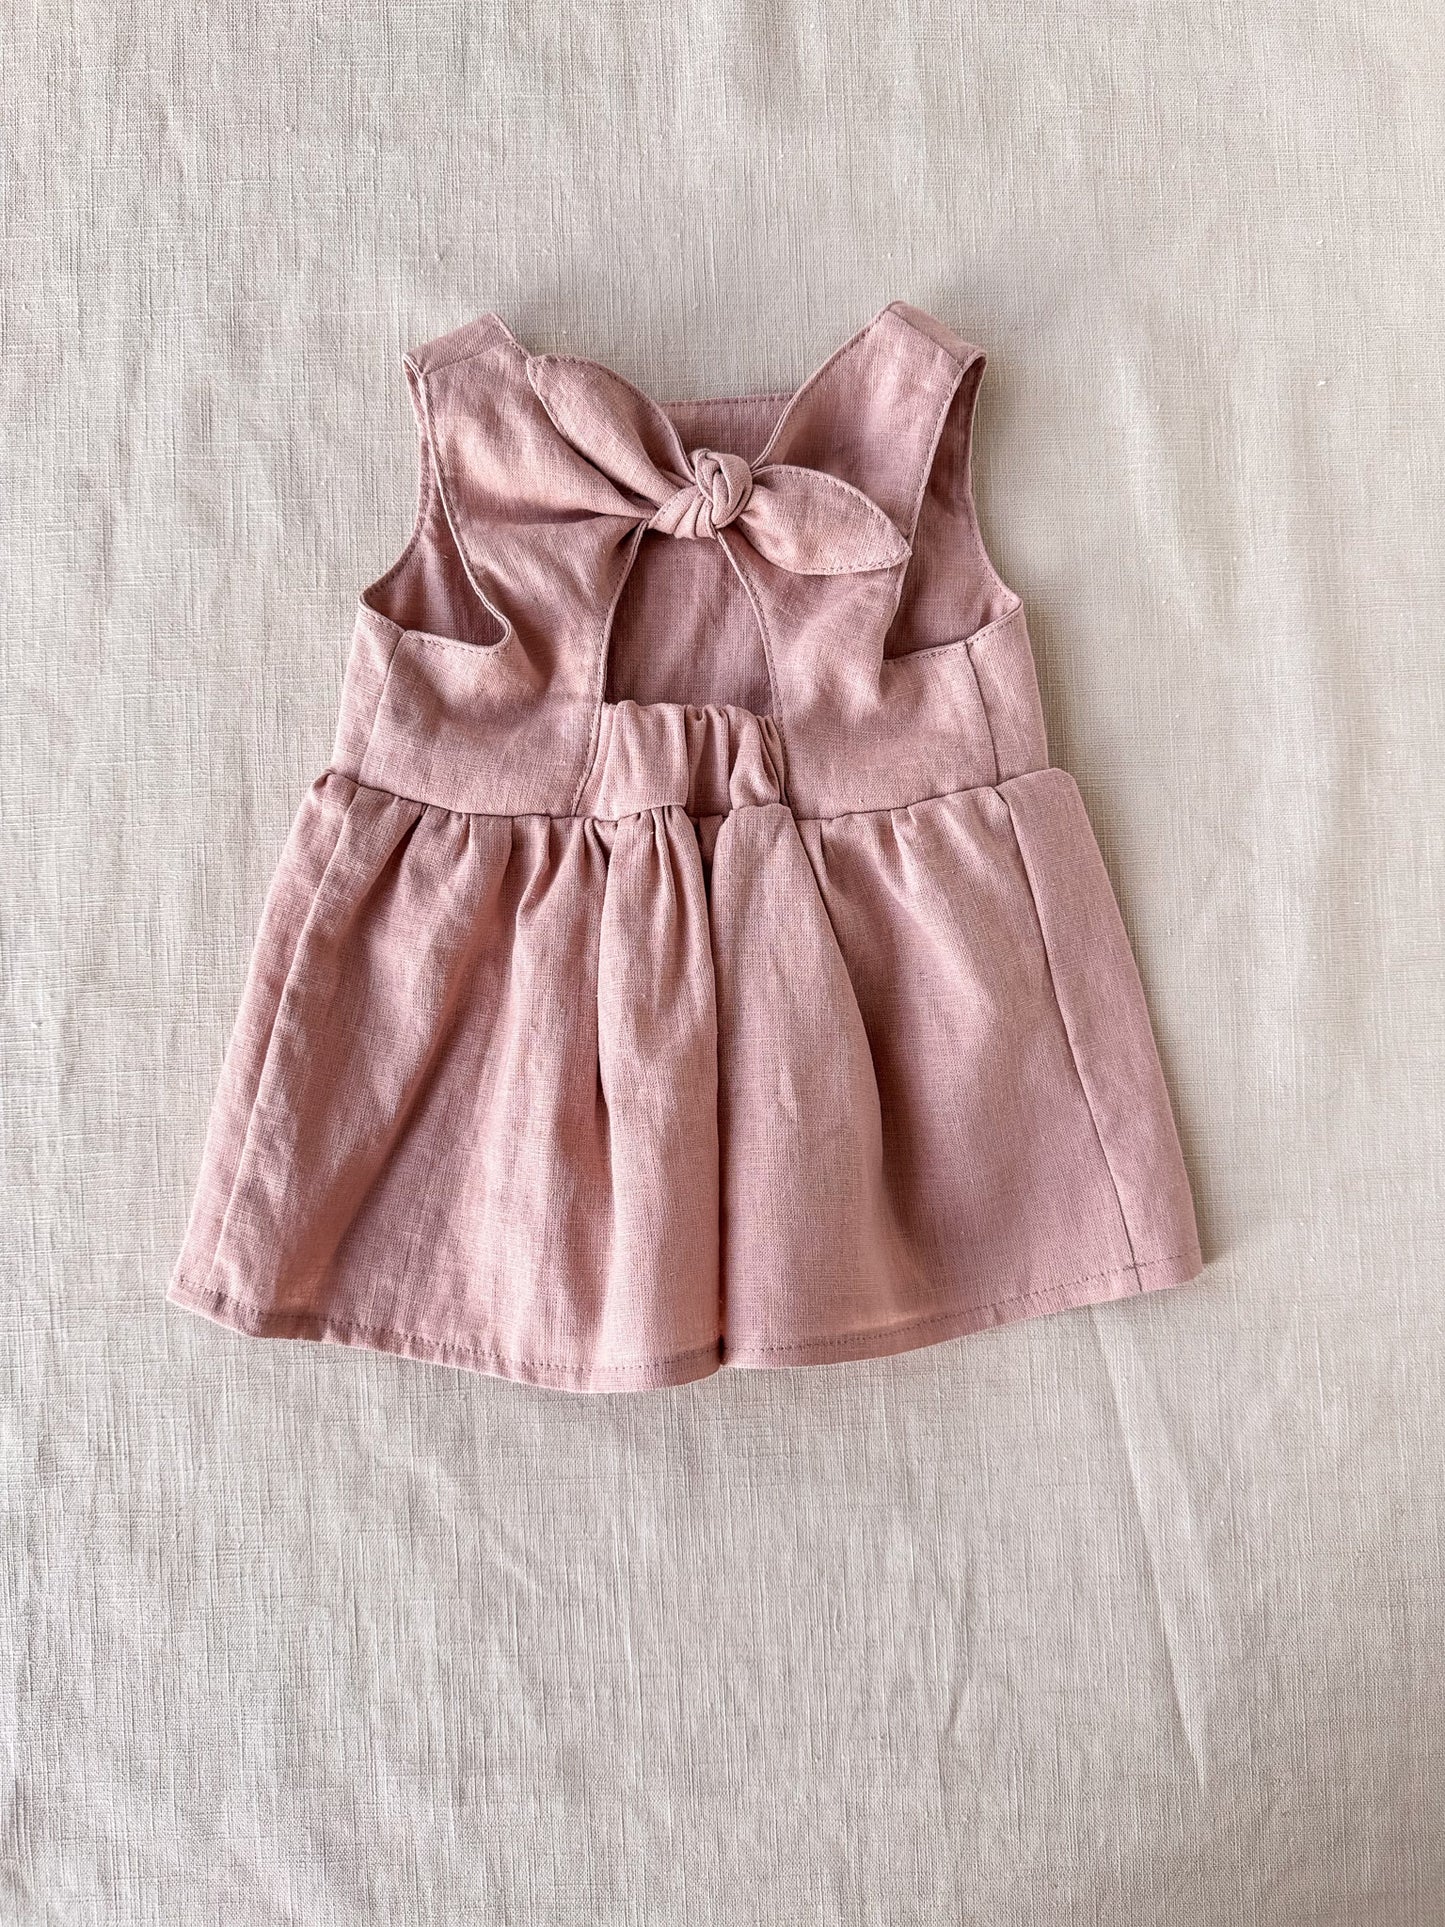 Arabella baby dress / linen - vintage rose